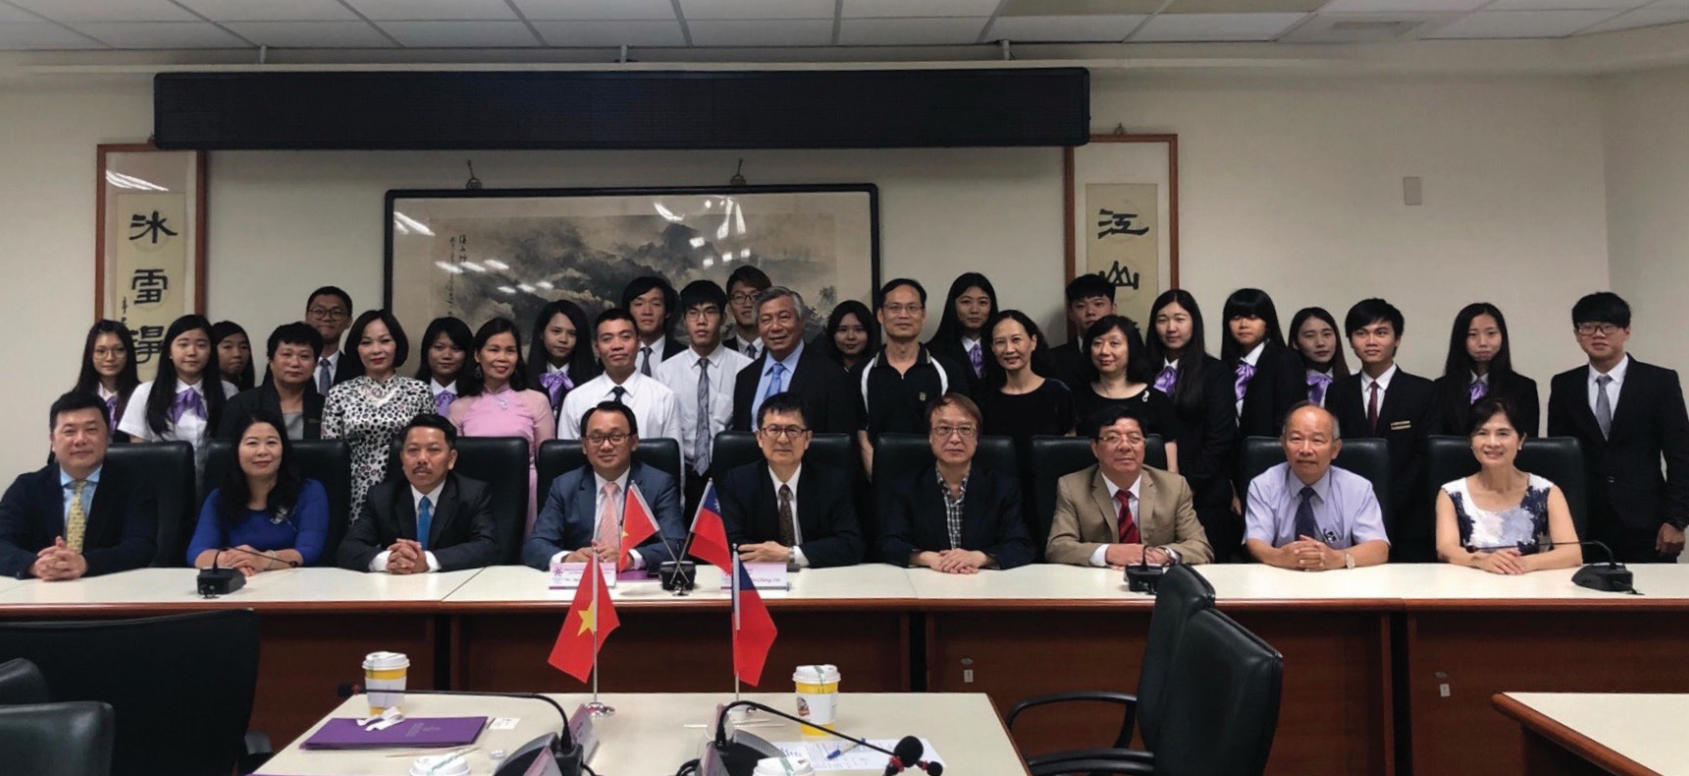 PGS.TS. Nguyễn Thanh Hà, Phó Vụ trưởng Vụ Đào tạo Bộ VH,TT & DL cùng Giám đốc, Hiệu trưởng các trường nghệ thuật trực thuộc Bộ sang Taiwan ký kết hợp tác đào tạo (2018)